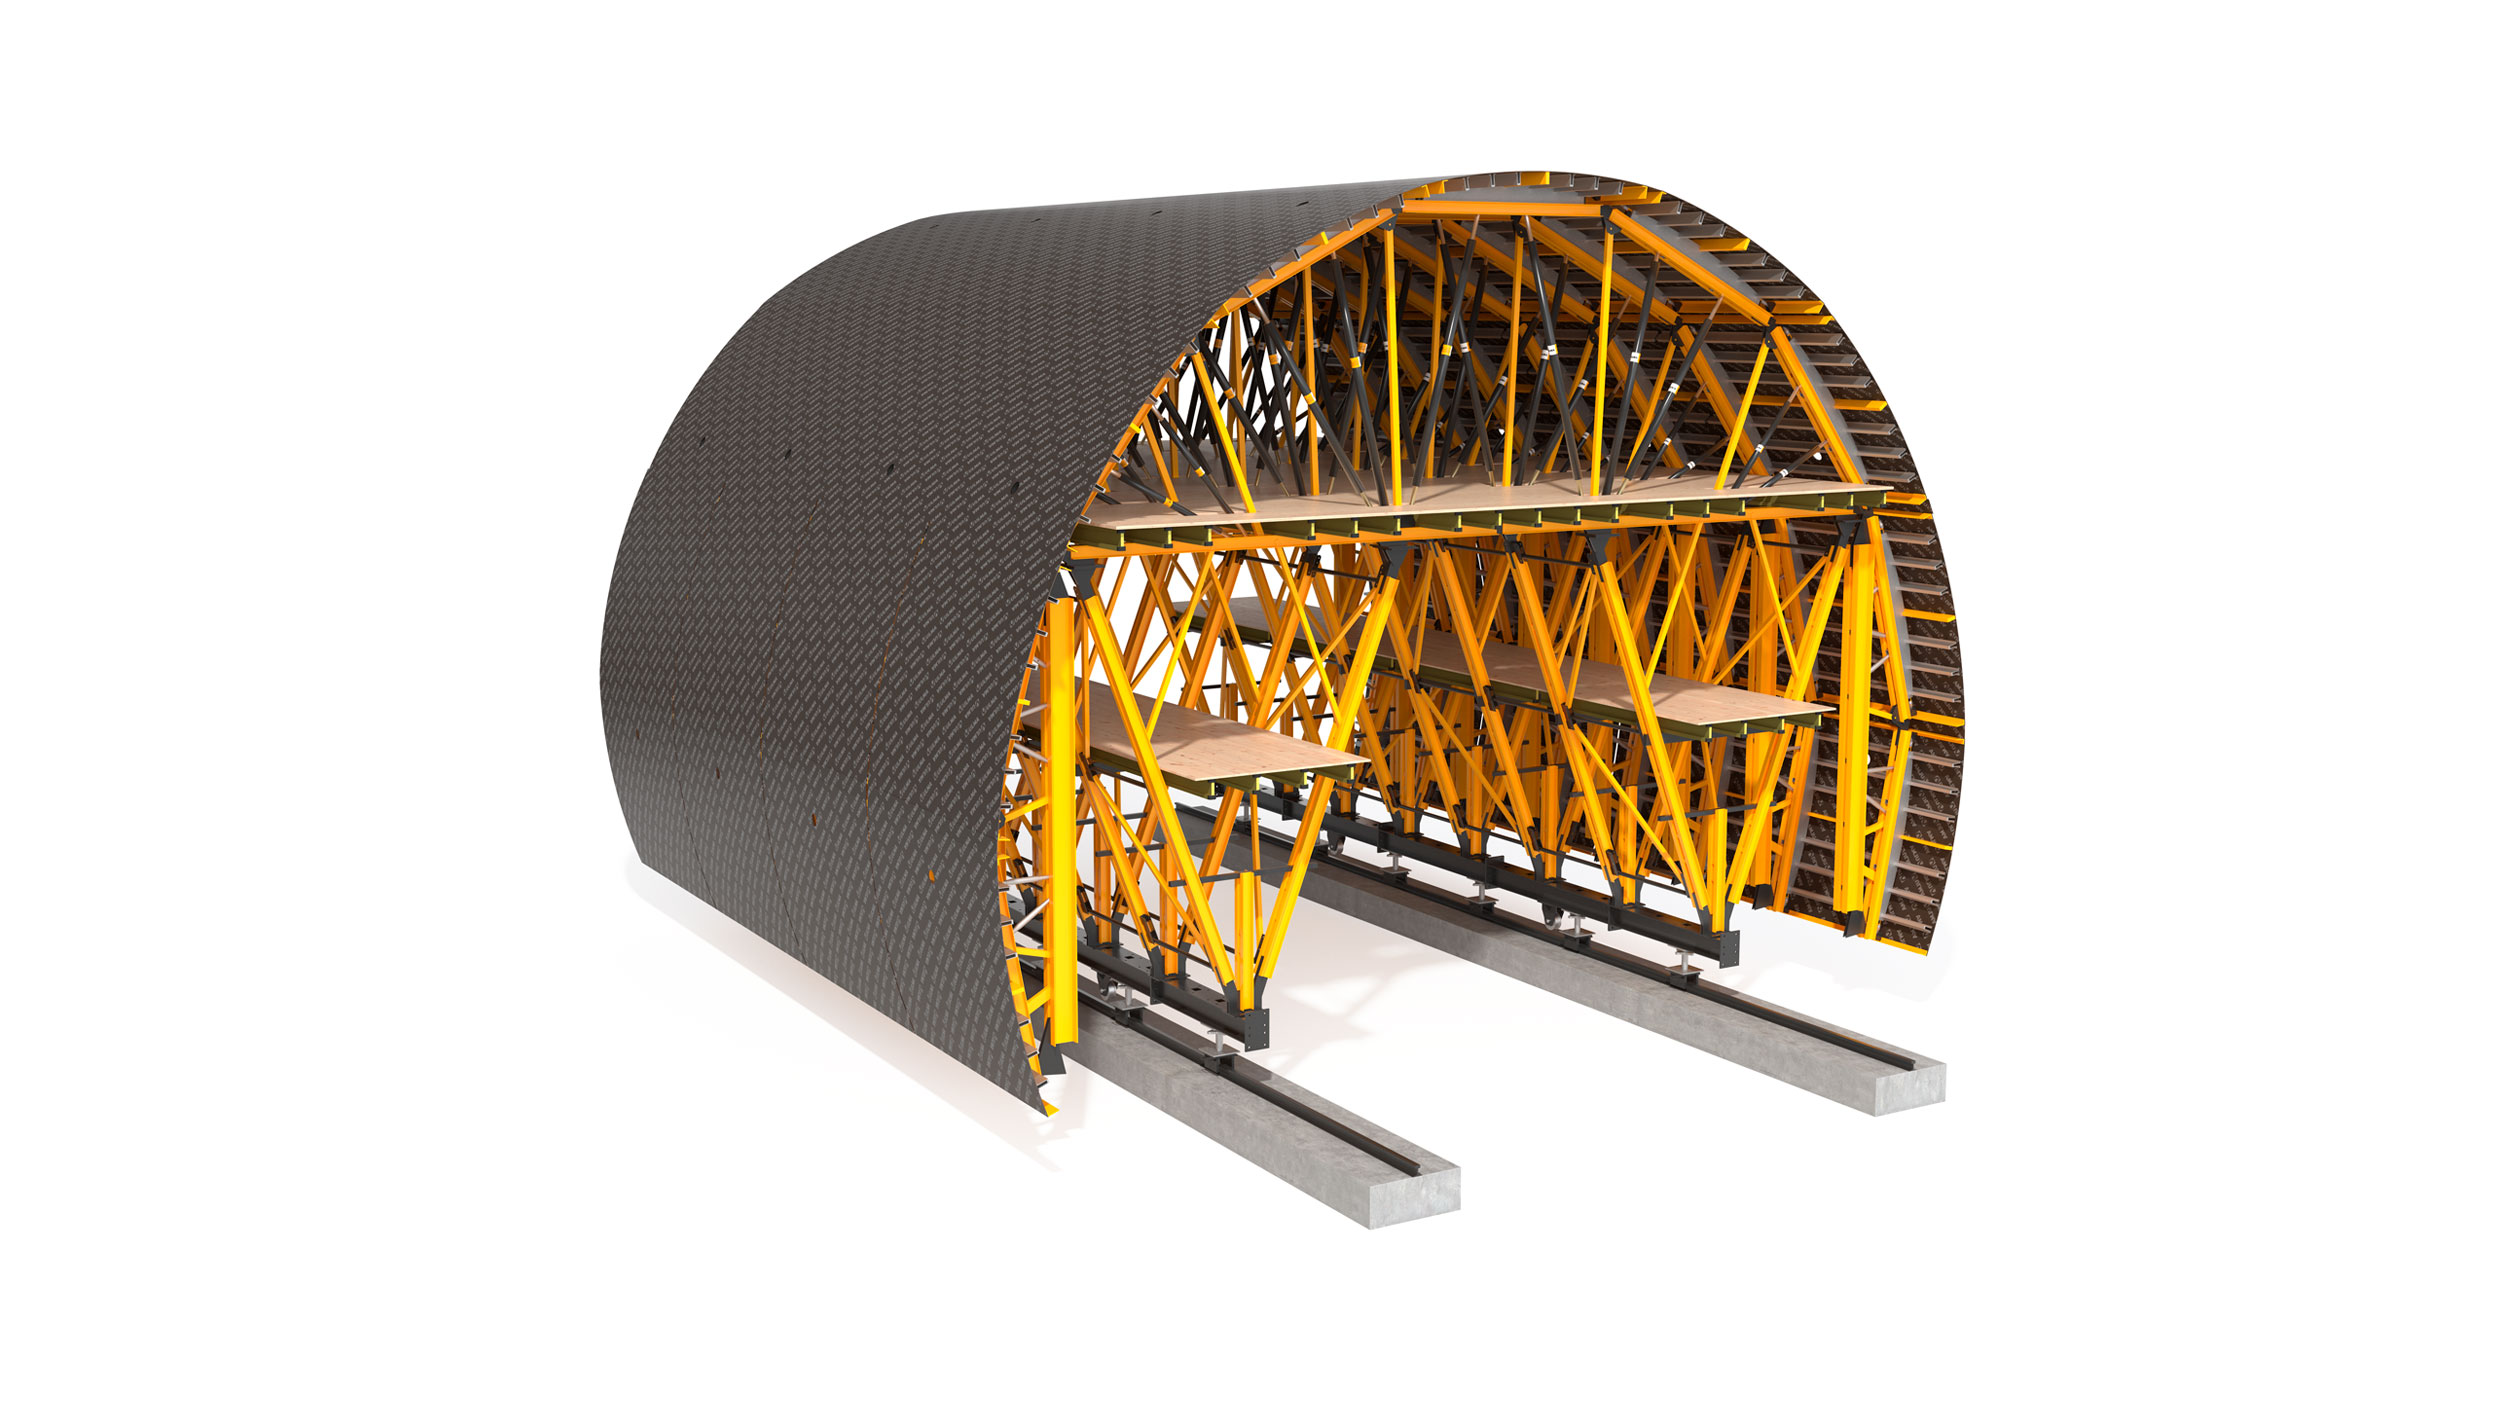 Carro de cofragem totalmente configurável, indicado para túneis de até 1 km de extensão. Sistema de alta rentabilidade em aluguer.